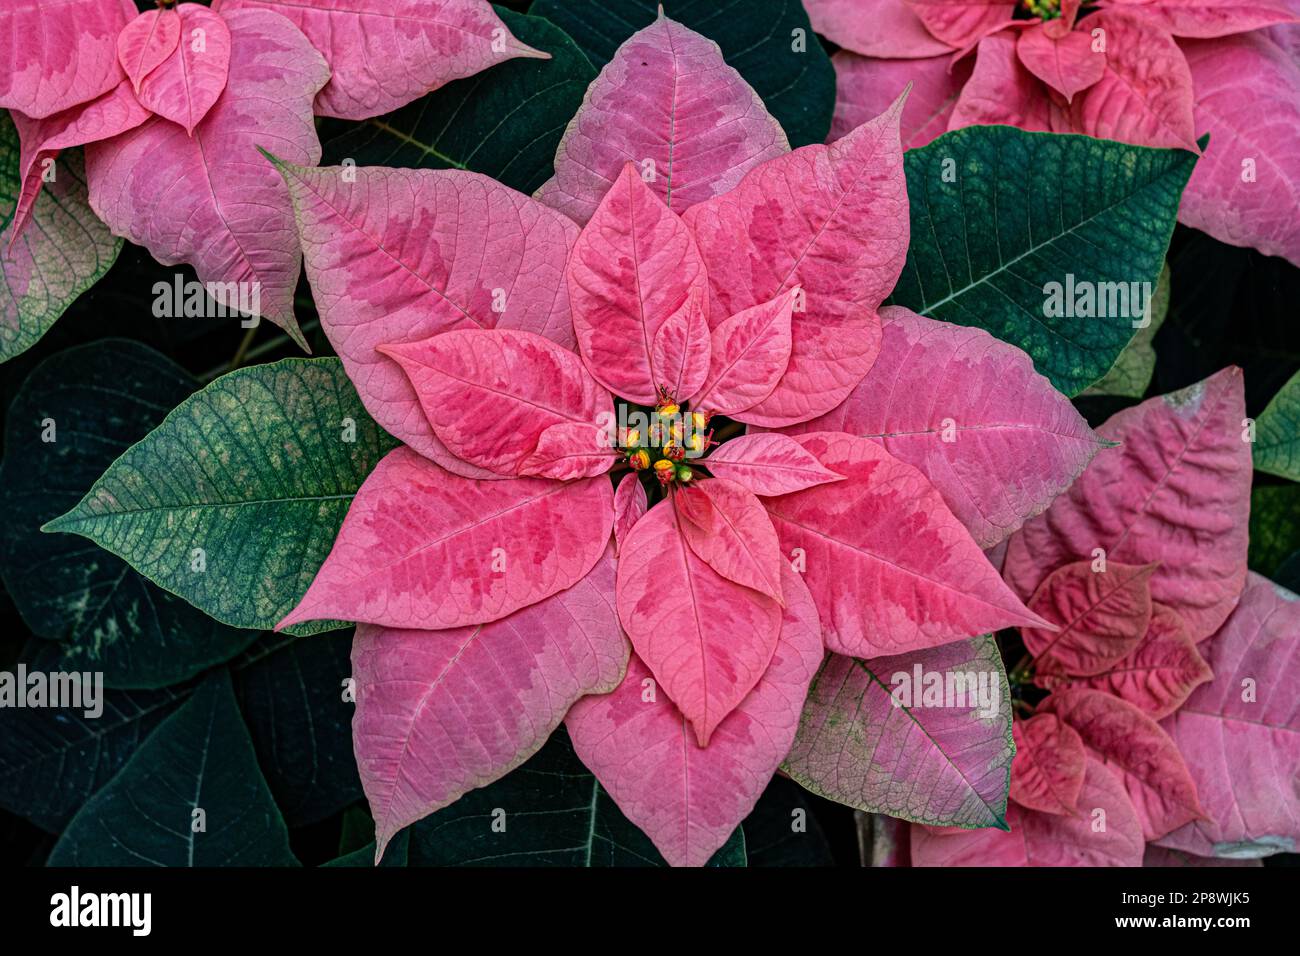 Fiore rosa, foglie verdi e pistillo giallo al centro Foto Stock